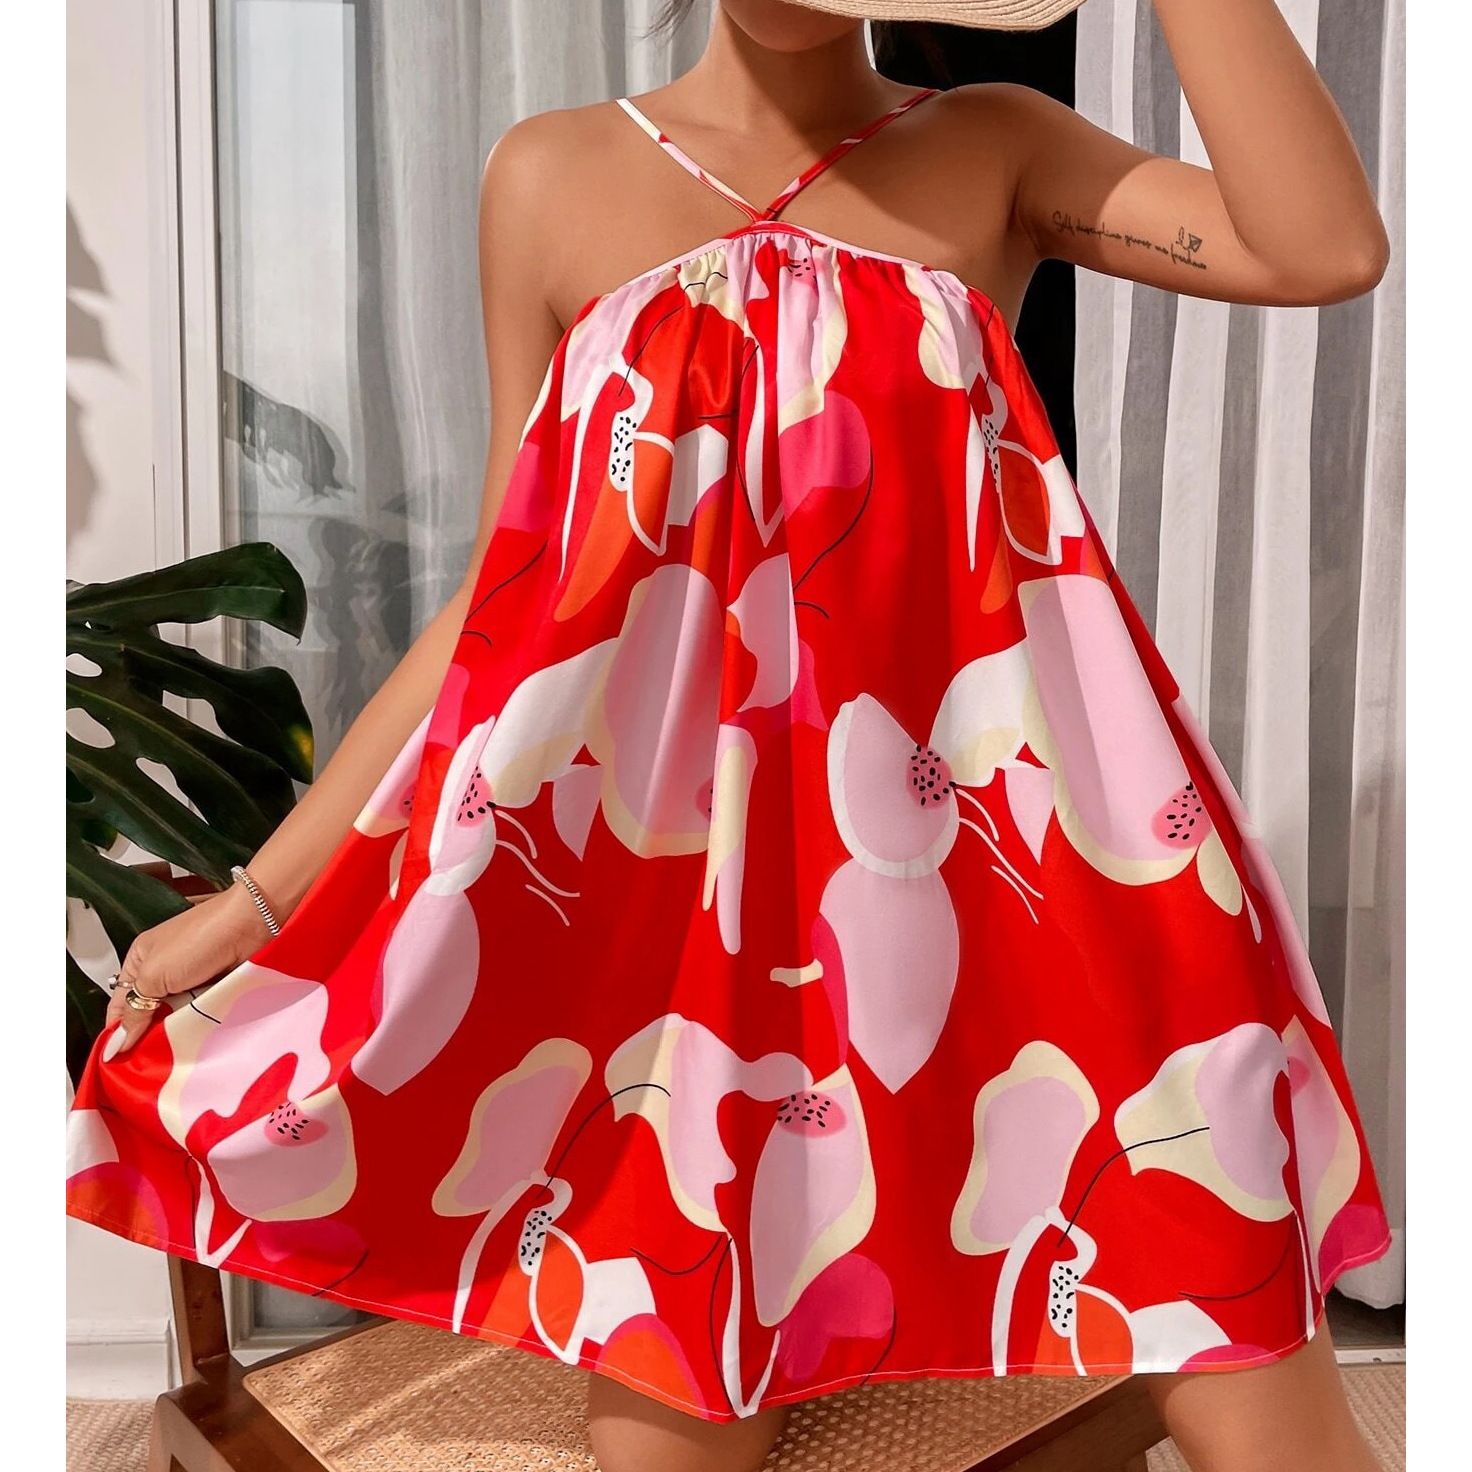 Allover Print Cami Dress - Multicolor, Small(4)